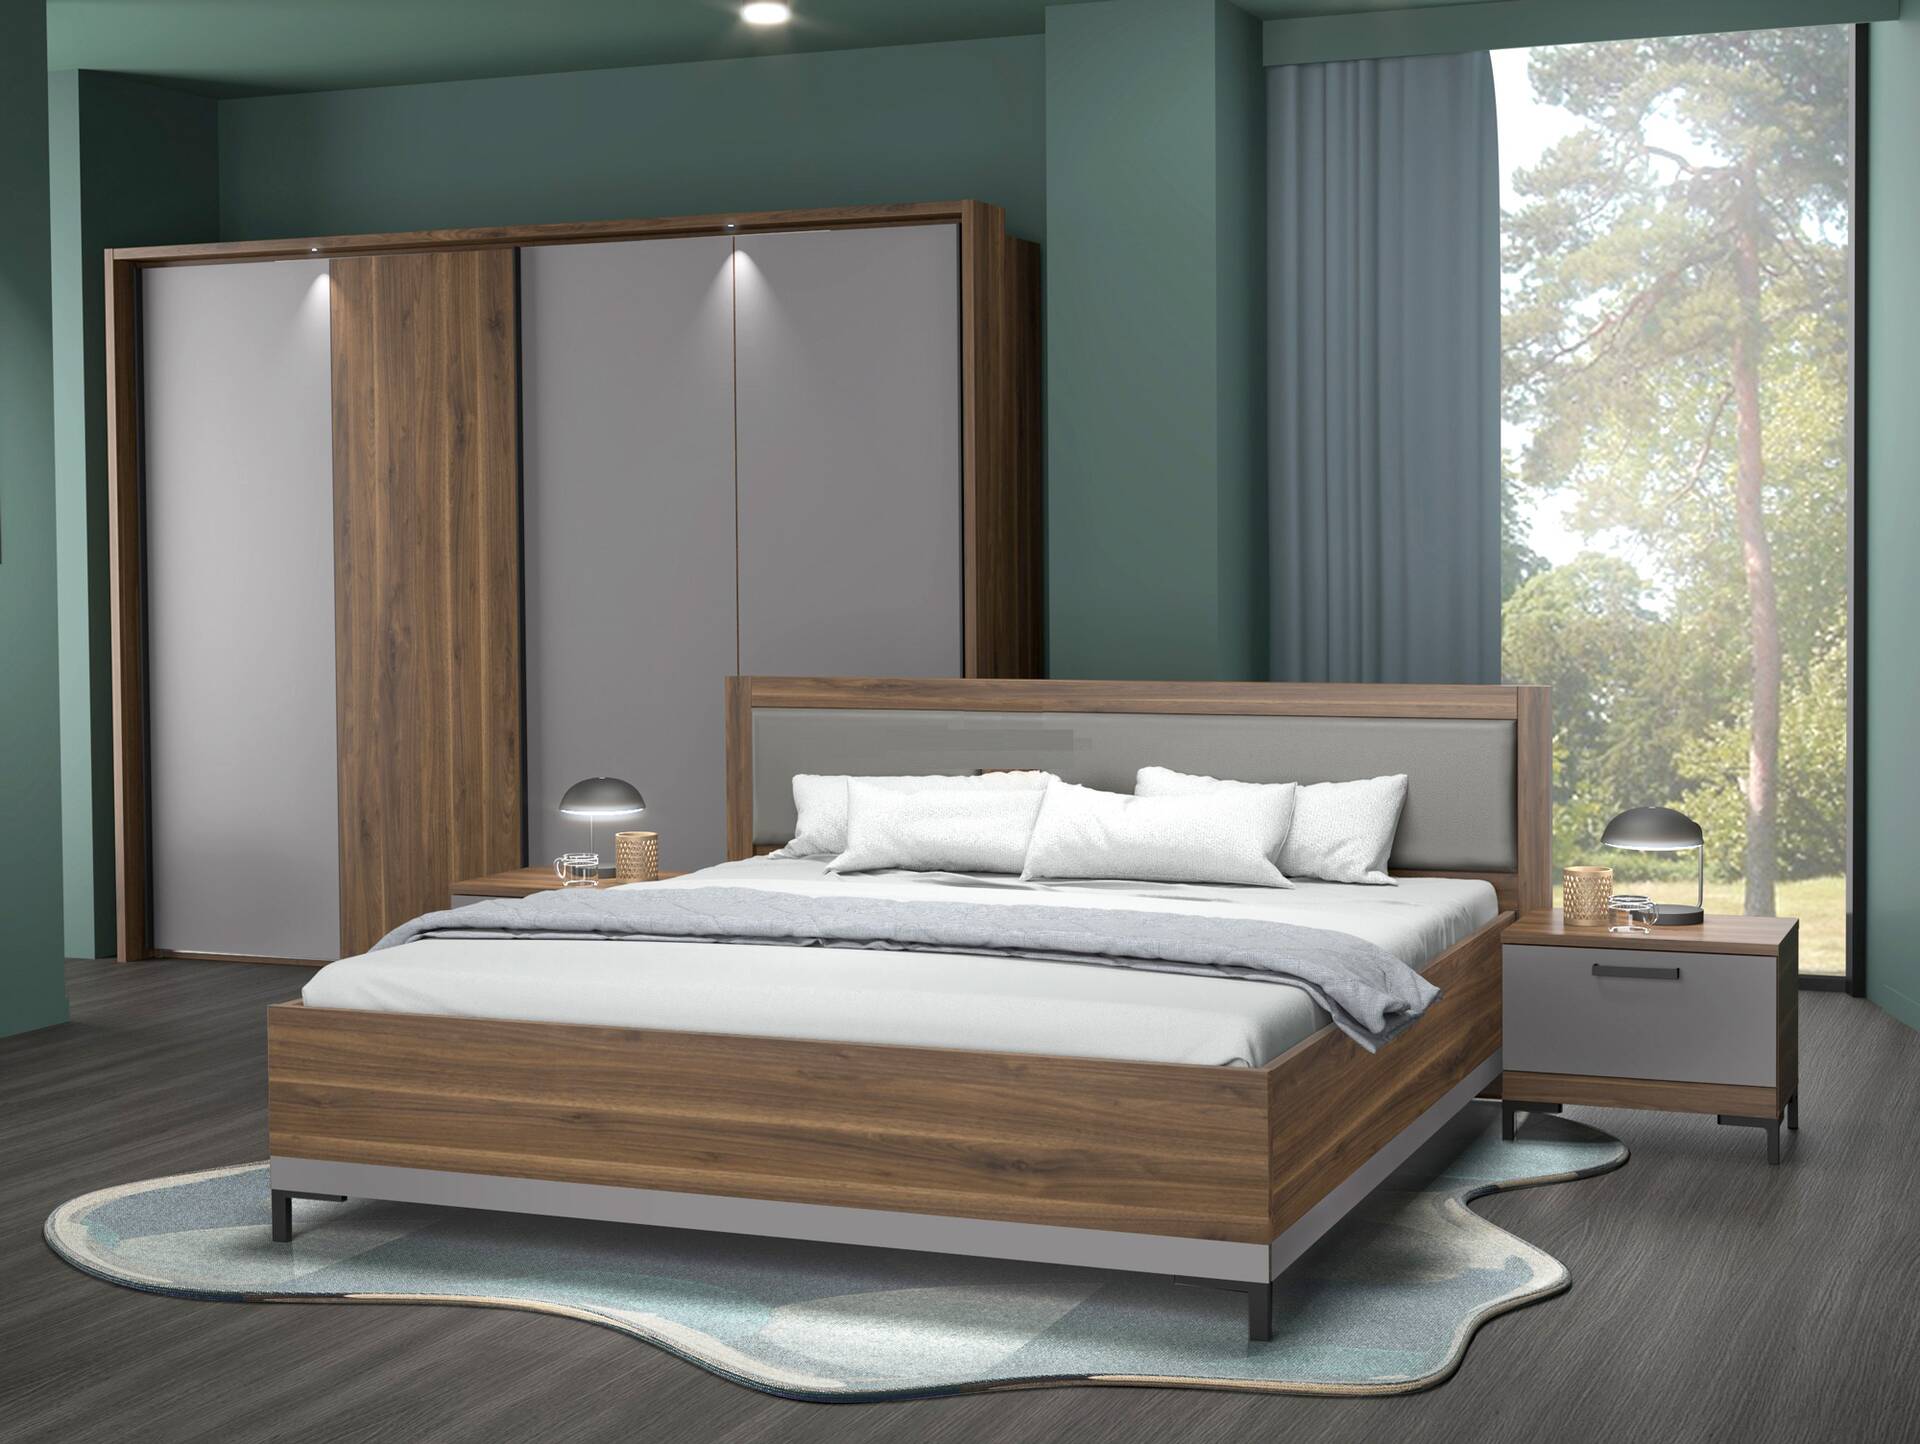 QUERRY Komplettschlafzimmer, Material Dekorspanplatte, walnussfarbig/grau 160 cm | 270 cm